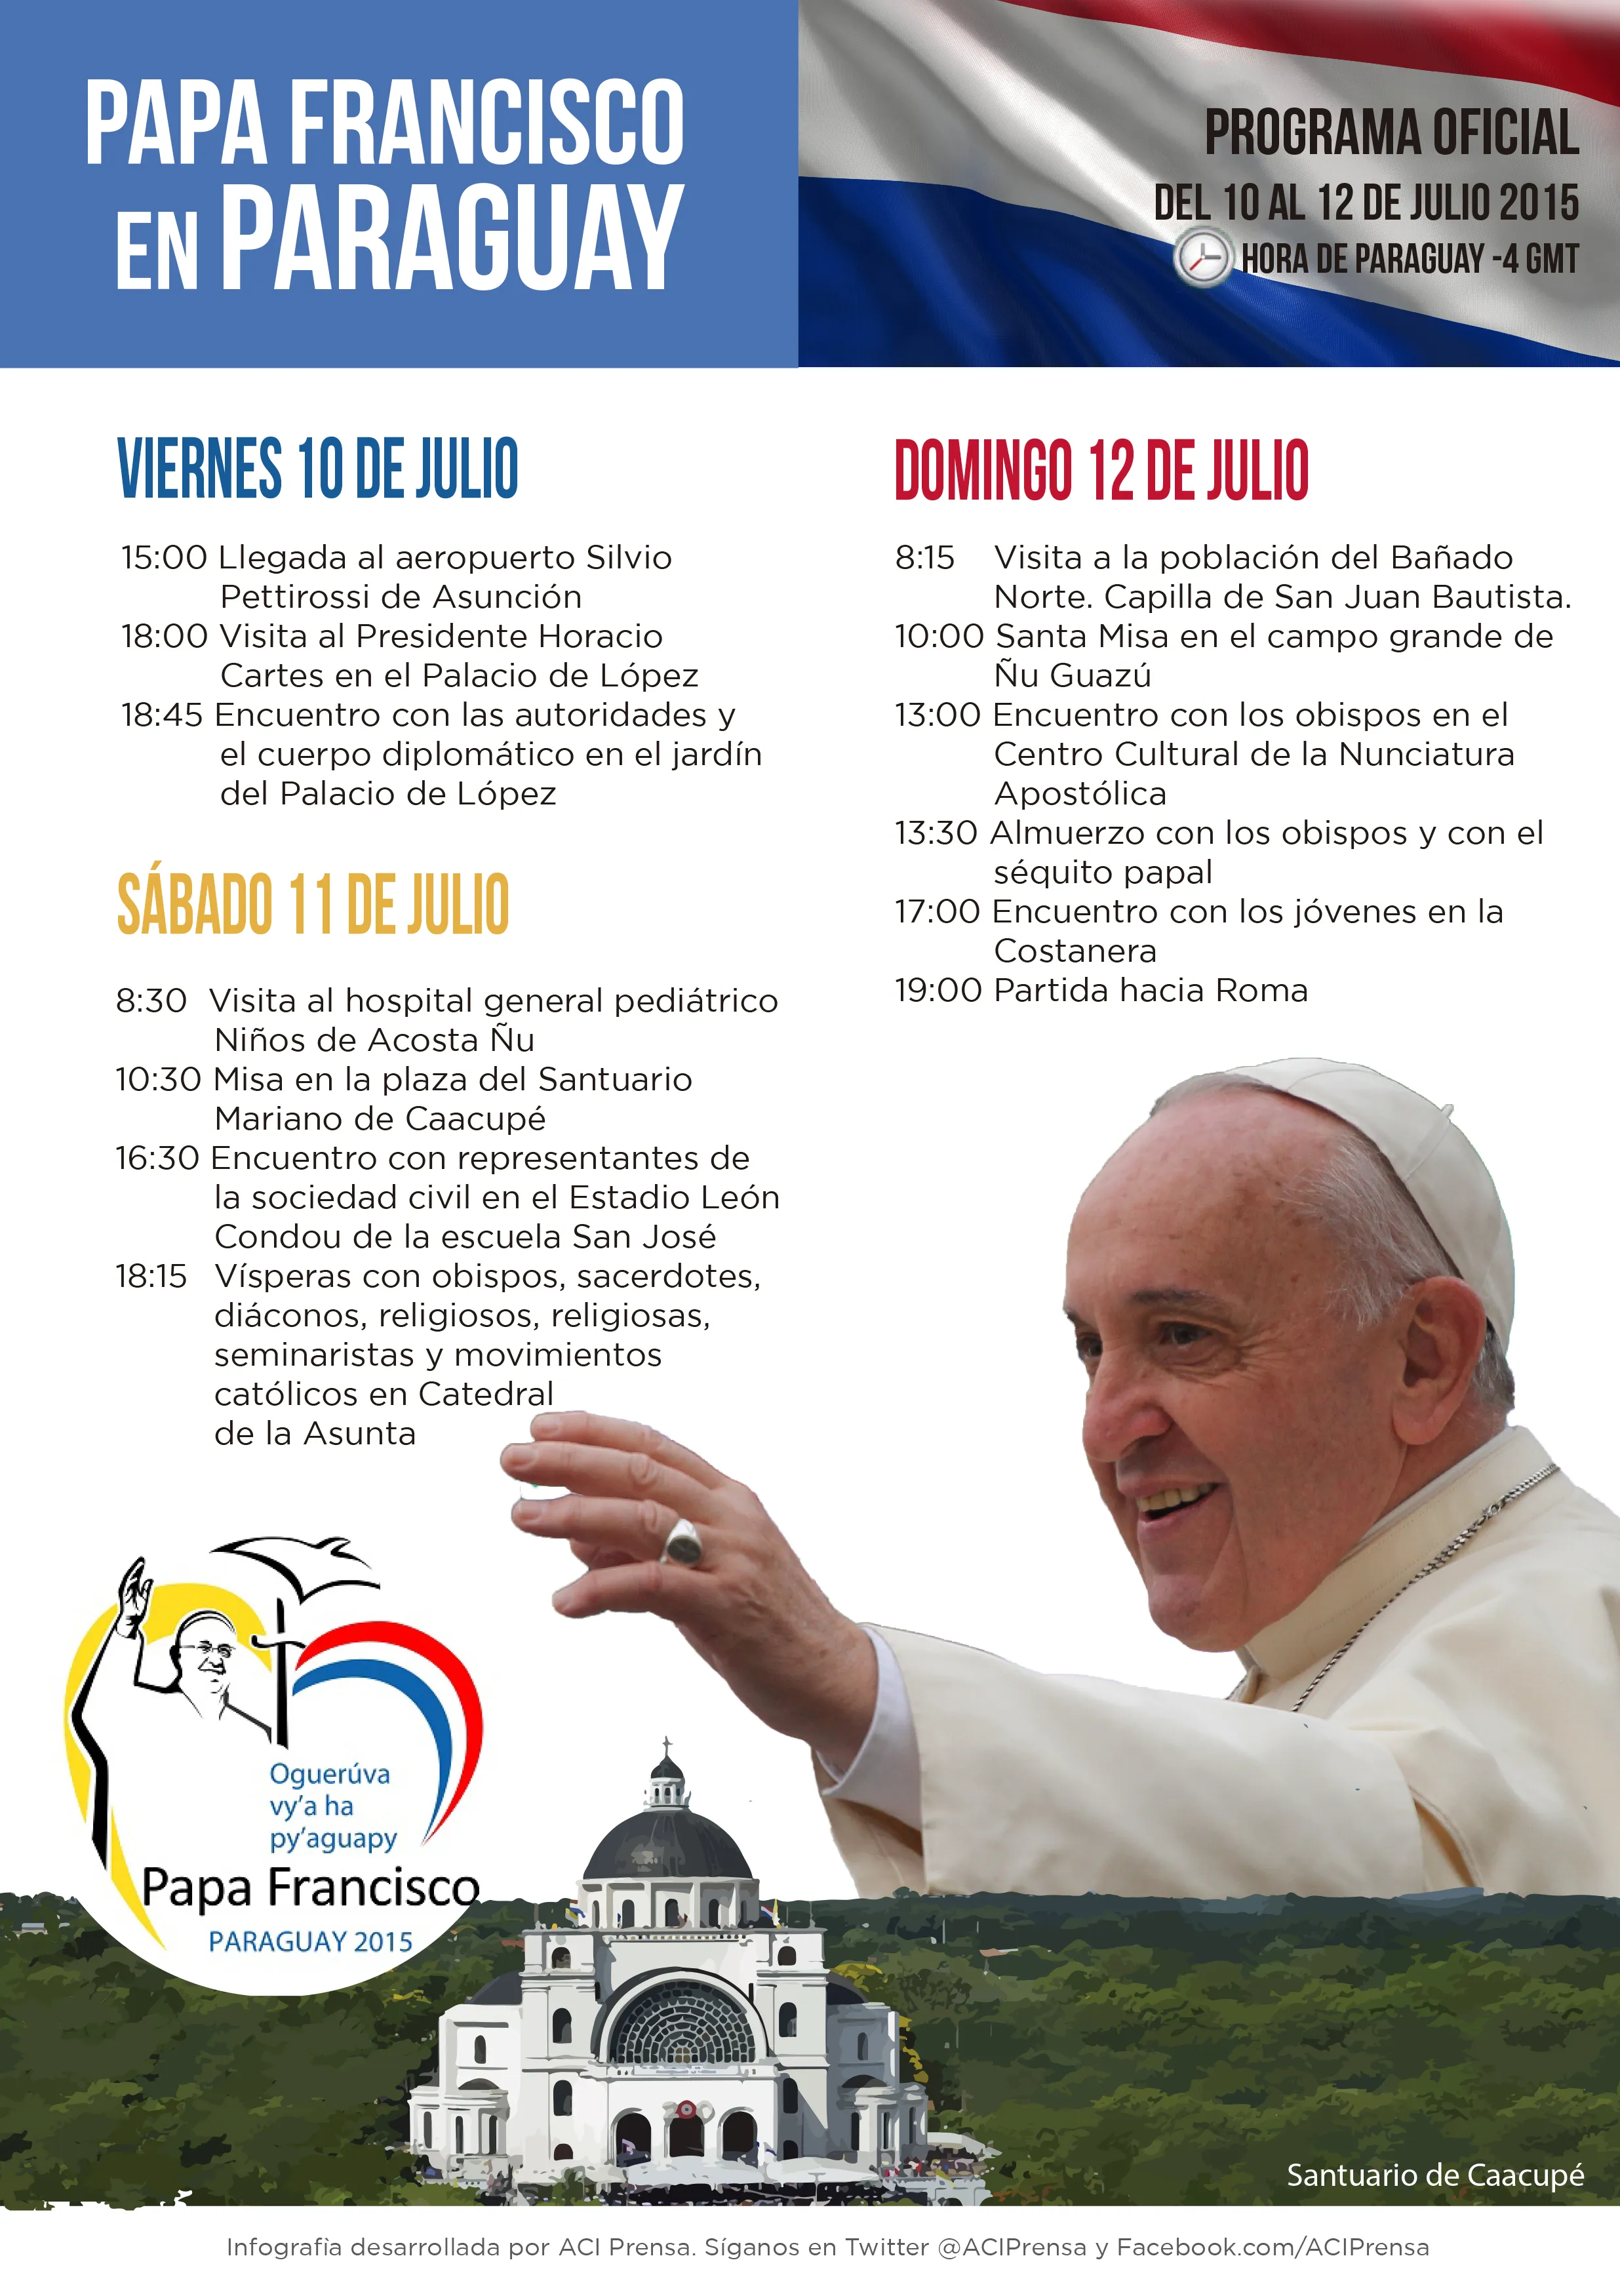 [INFOGRAFÍA] Programa oficial de la visita del Papa Francisco a Paraguay